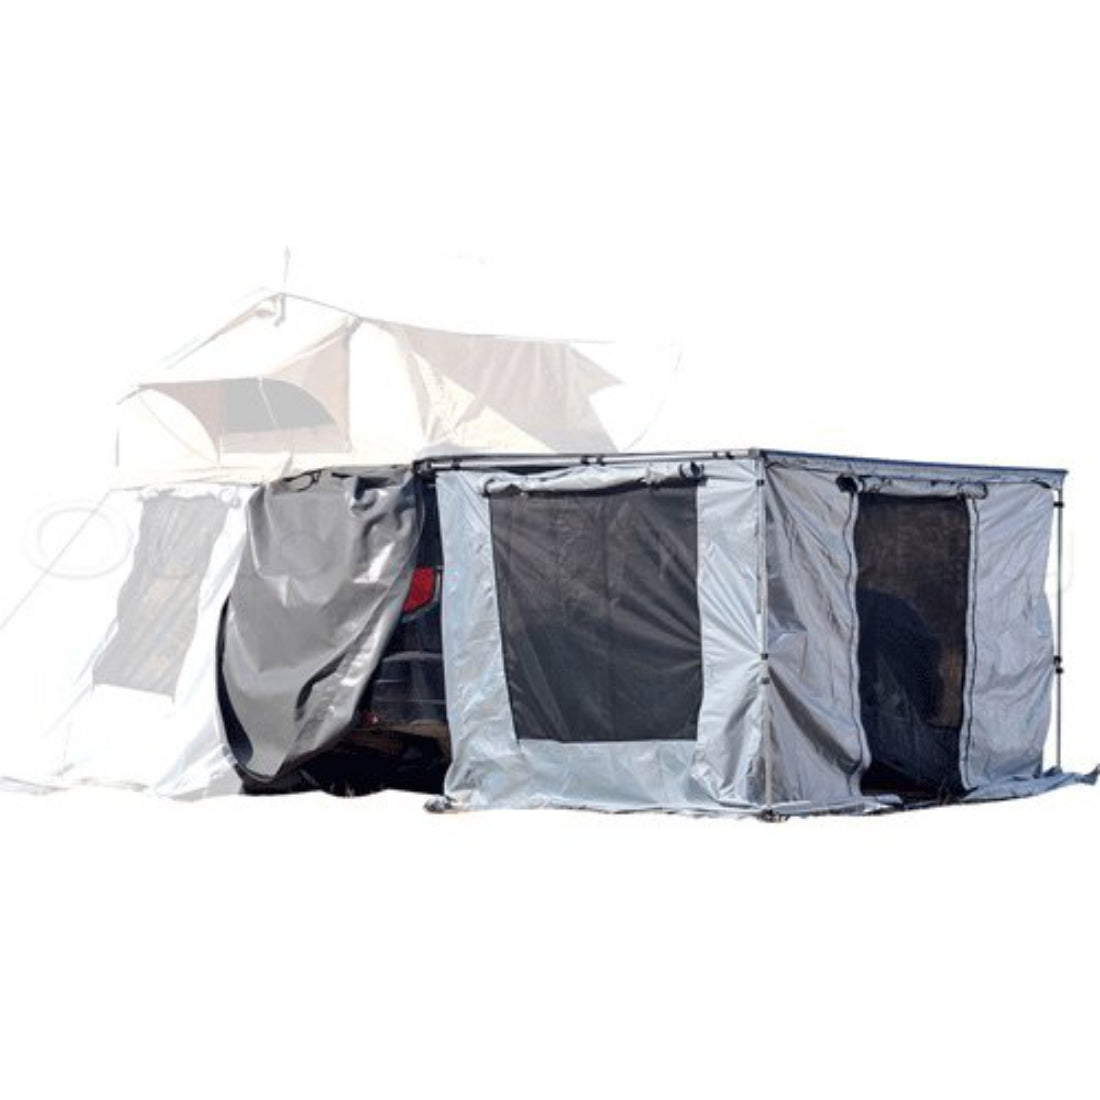 1.6m x 2.5m Awning Room Mesh Net Camping